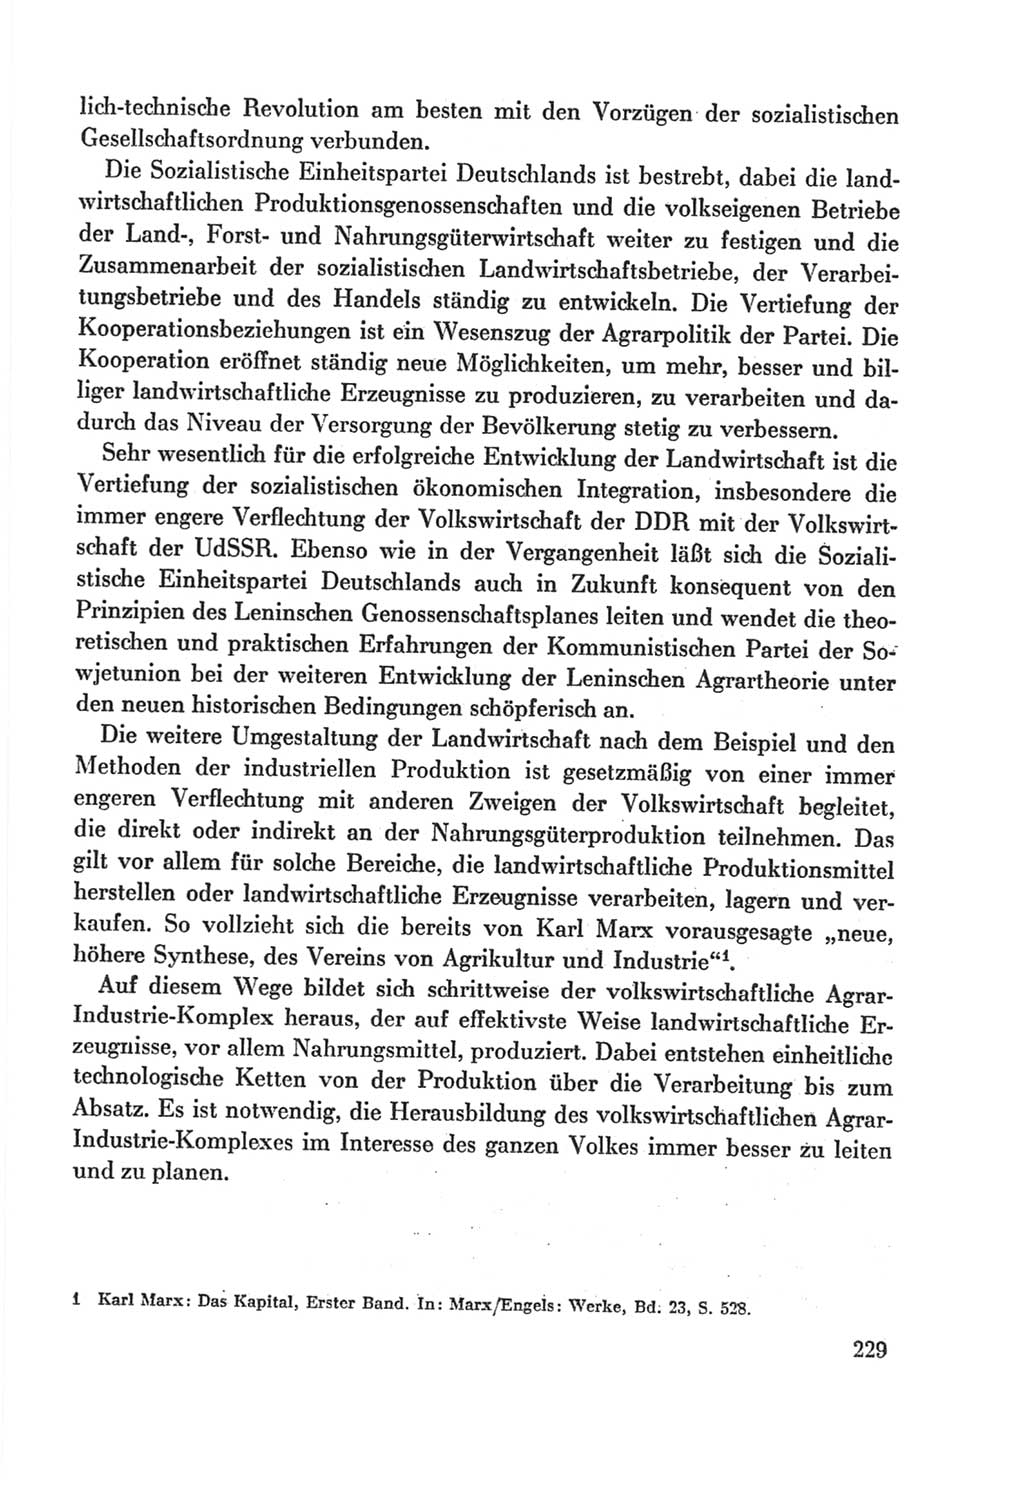 Protokoll der Verhandlungen des Ⅸ. Parteitages der Sozialistischen Einheitspartei Deutschlands (SED) [Deutsche Demokratische Republik (DDR)] 1976, Band 2, Seite 229 (Prot. Verh. Ⅸ. PT SED DDR 1976, Bd. 2, S. 229)